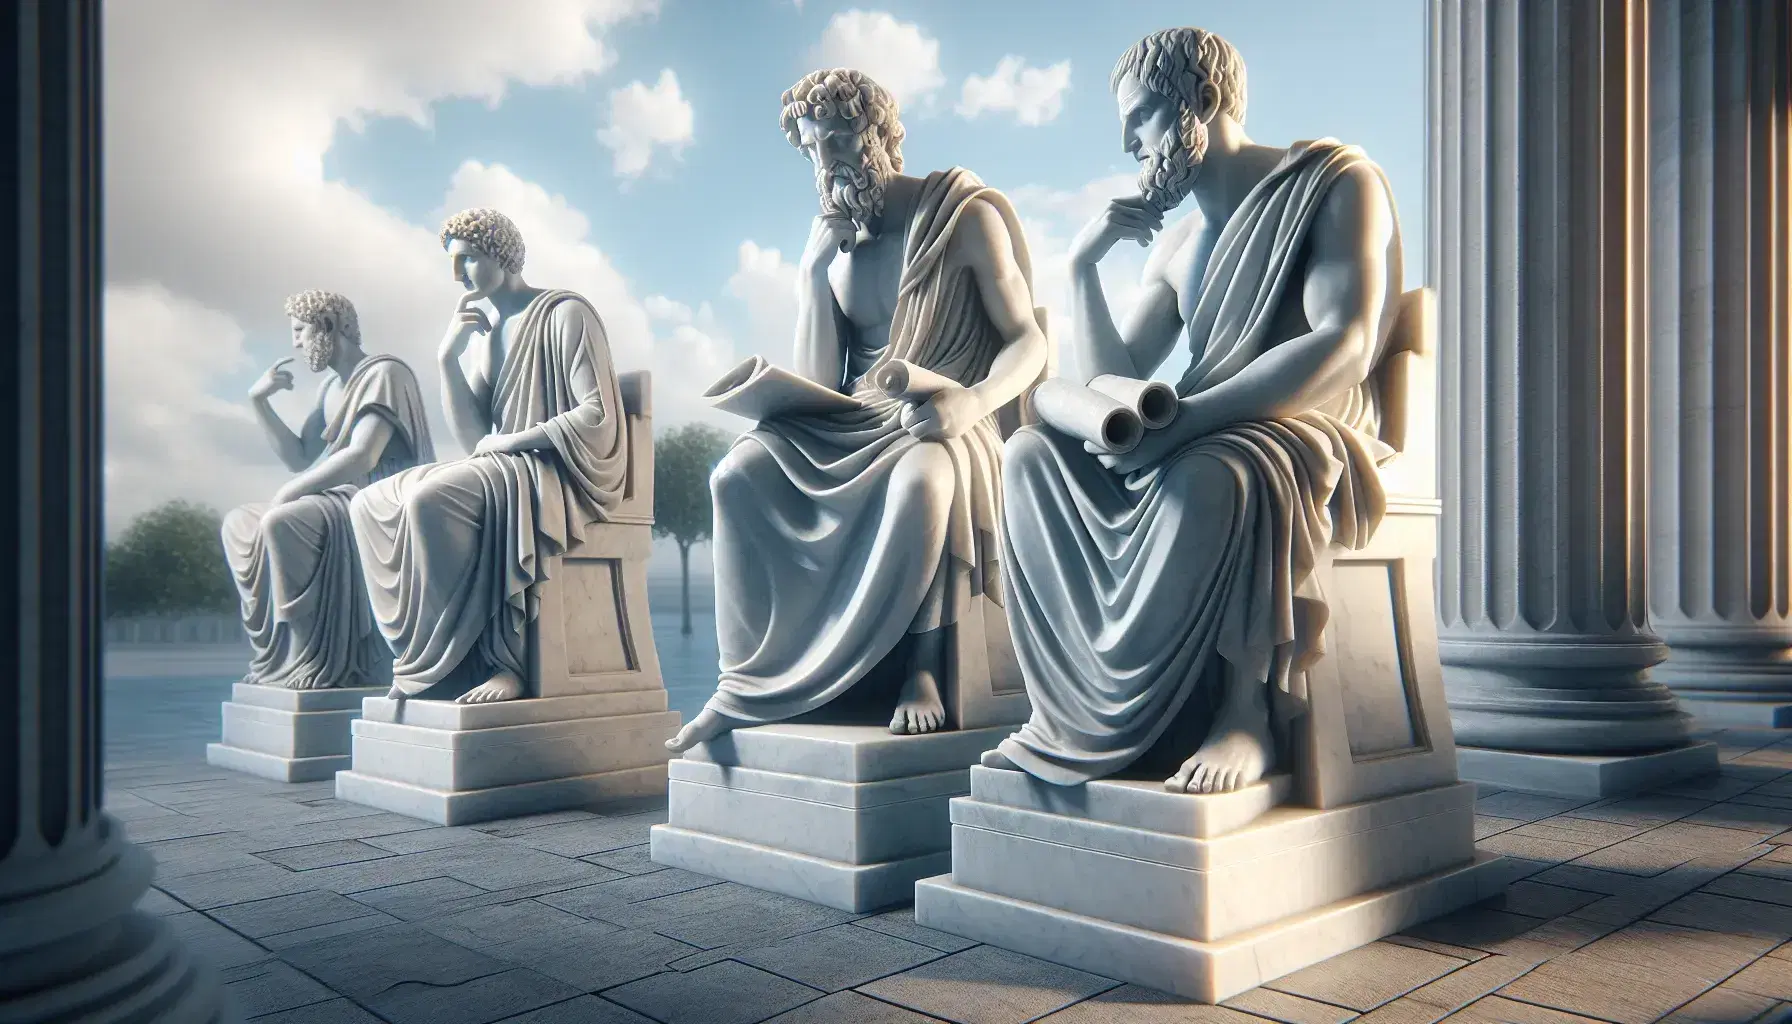 Tres estatuas de mármol blanco de filósofos griegos antiguos en poses reflexivas, bajo un cielo azul claro con nubes dispersas y rodeadas de vegetación.